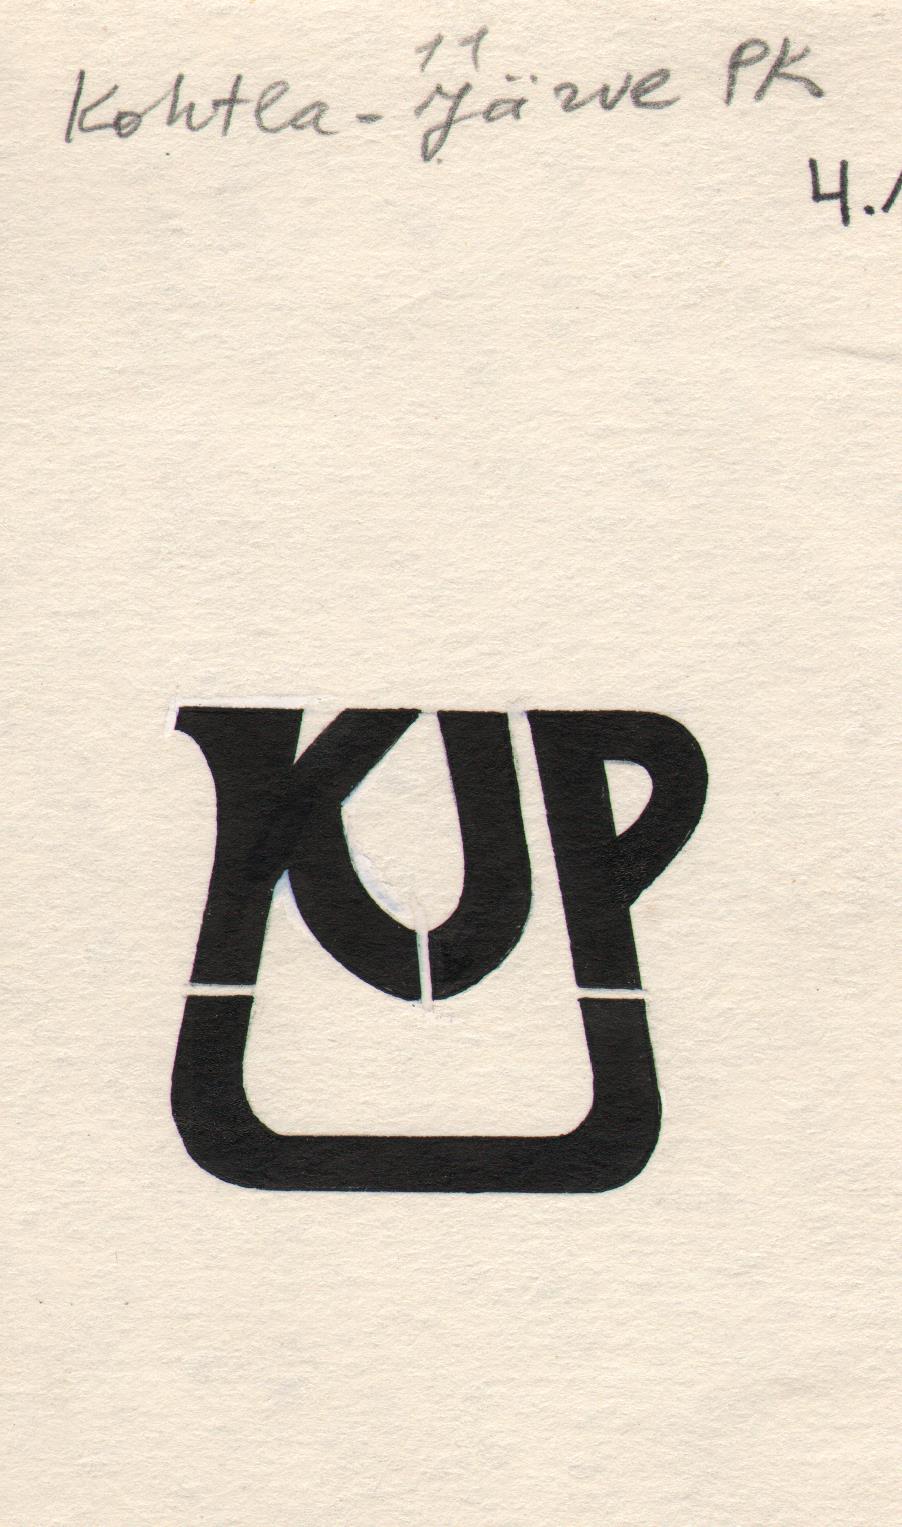 Kohtla-Järve PTK logo